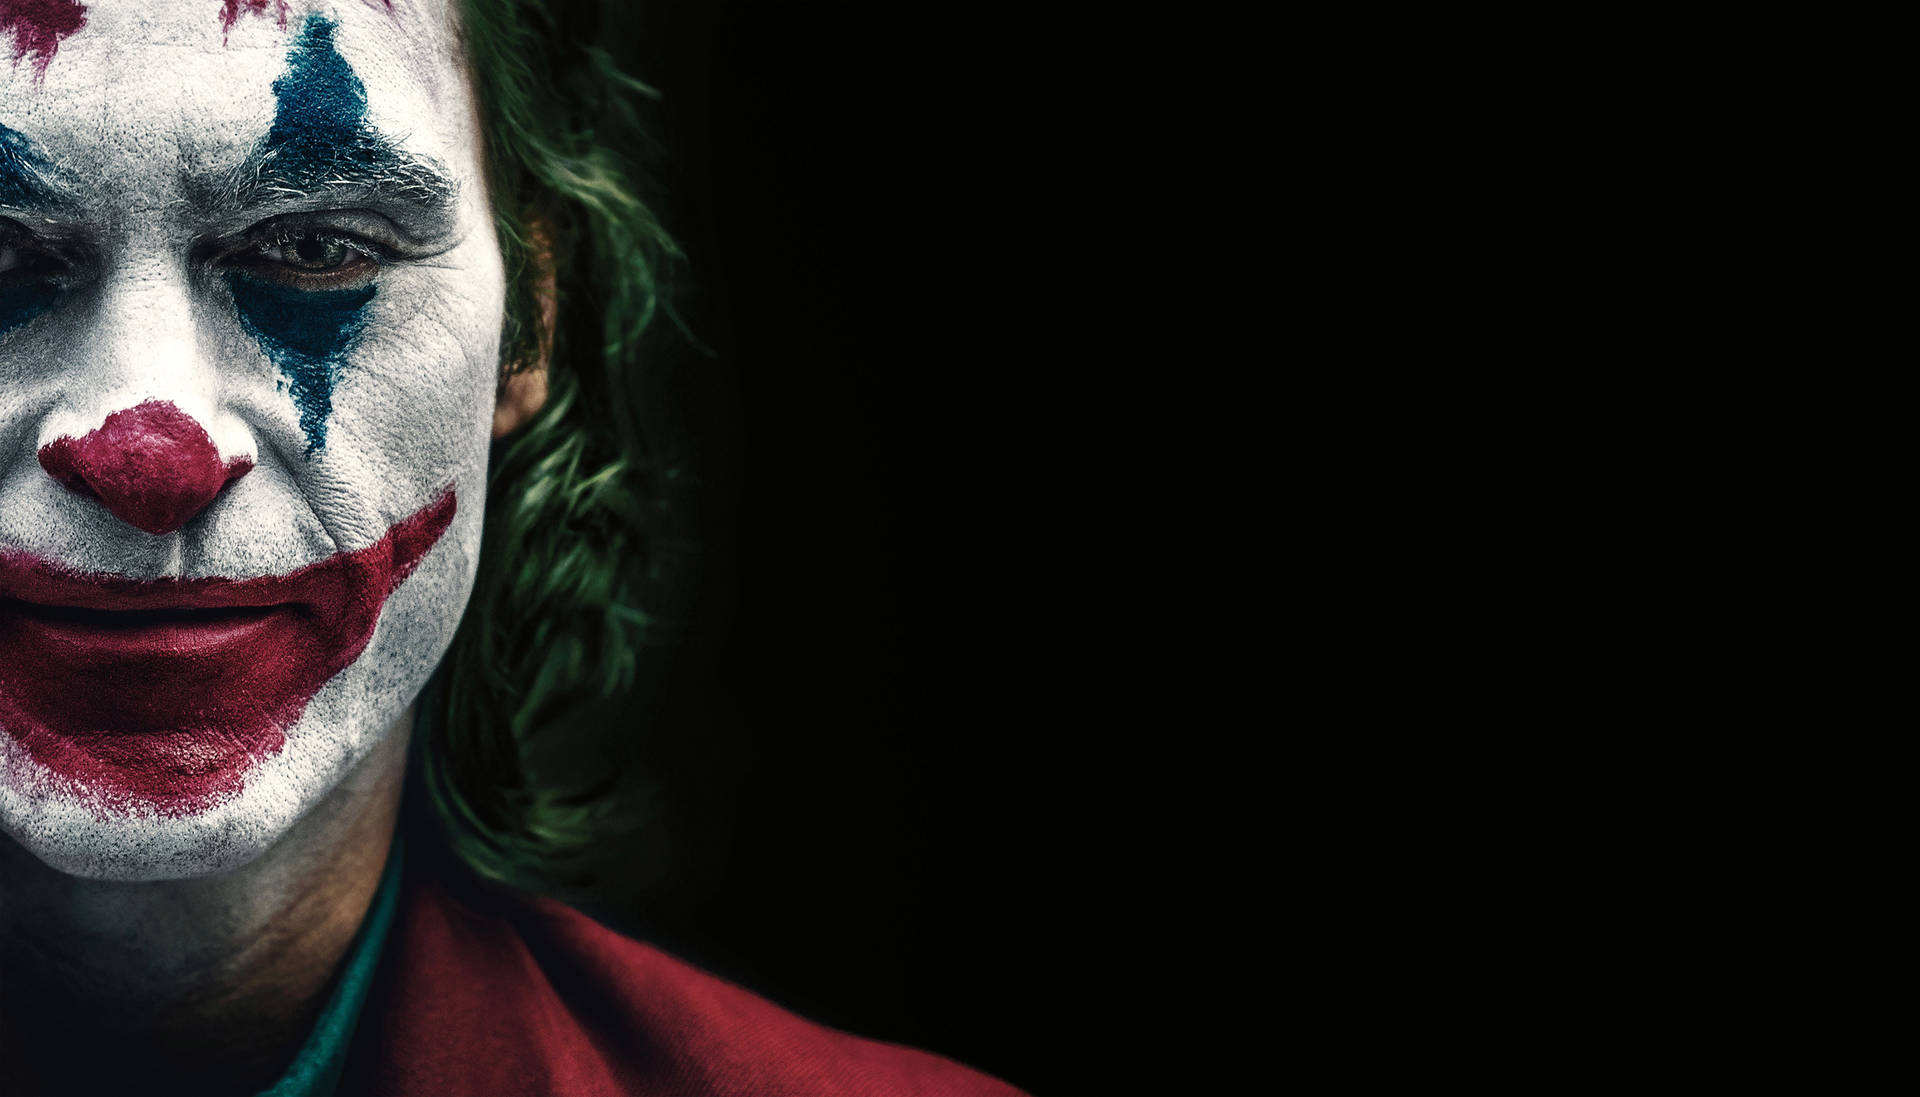 Joker 2019 Clown Make-up